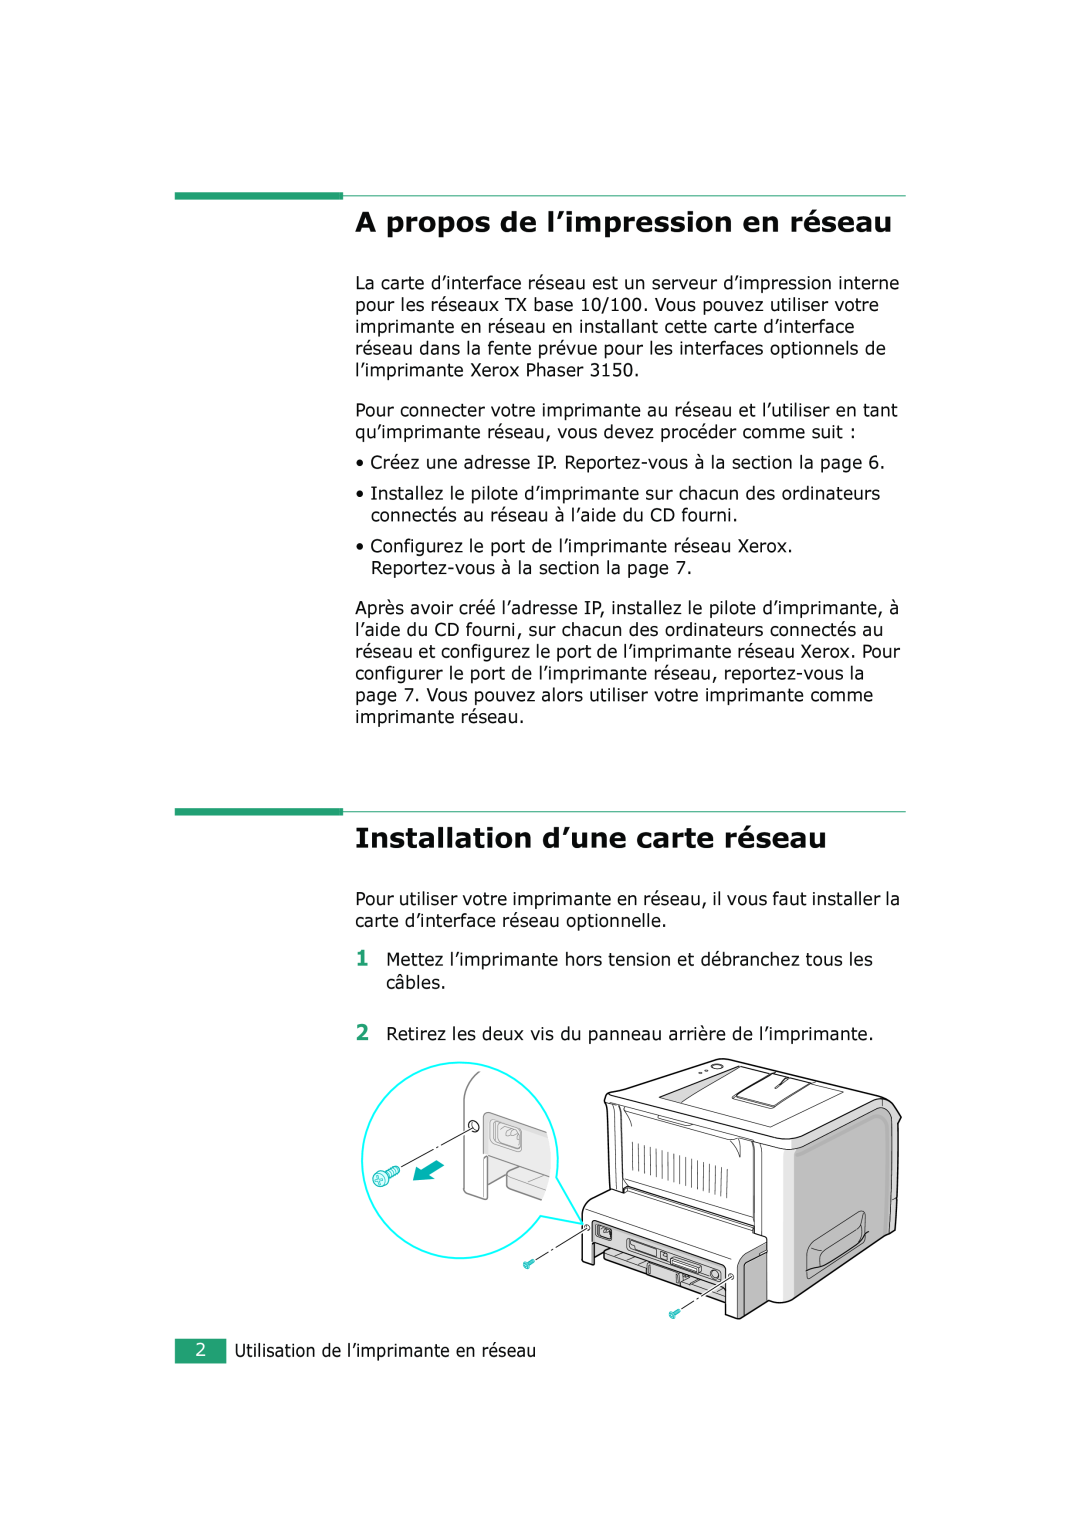 Xerox 3150 manual A propos de l’impression en réseau, Installation d’une carte réseau 